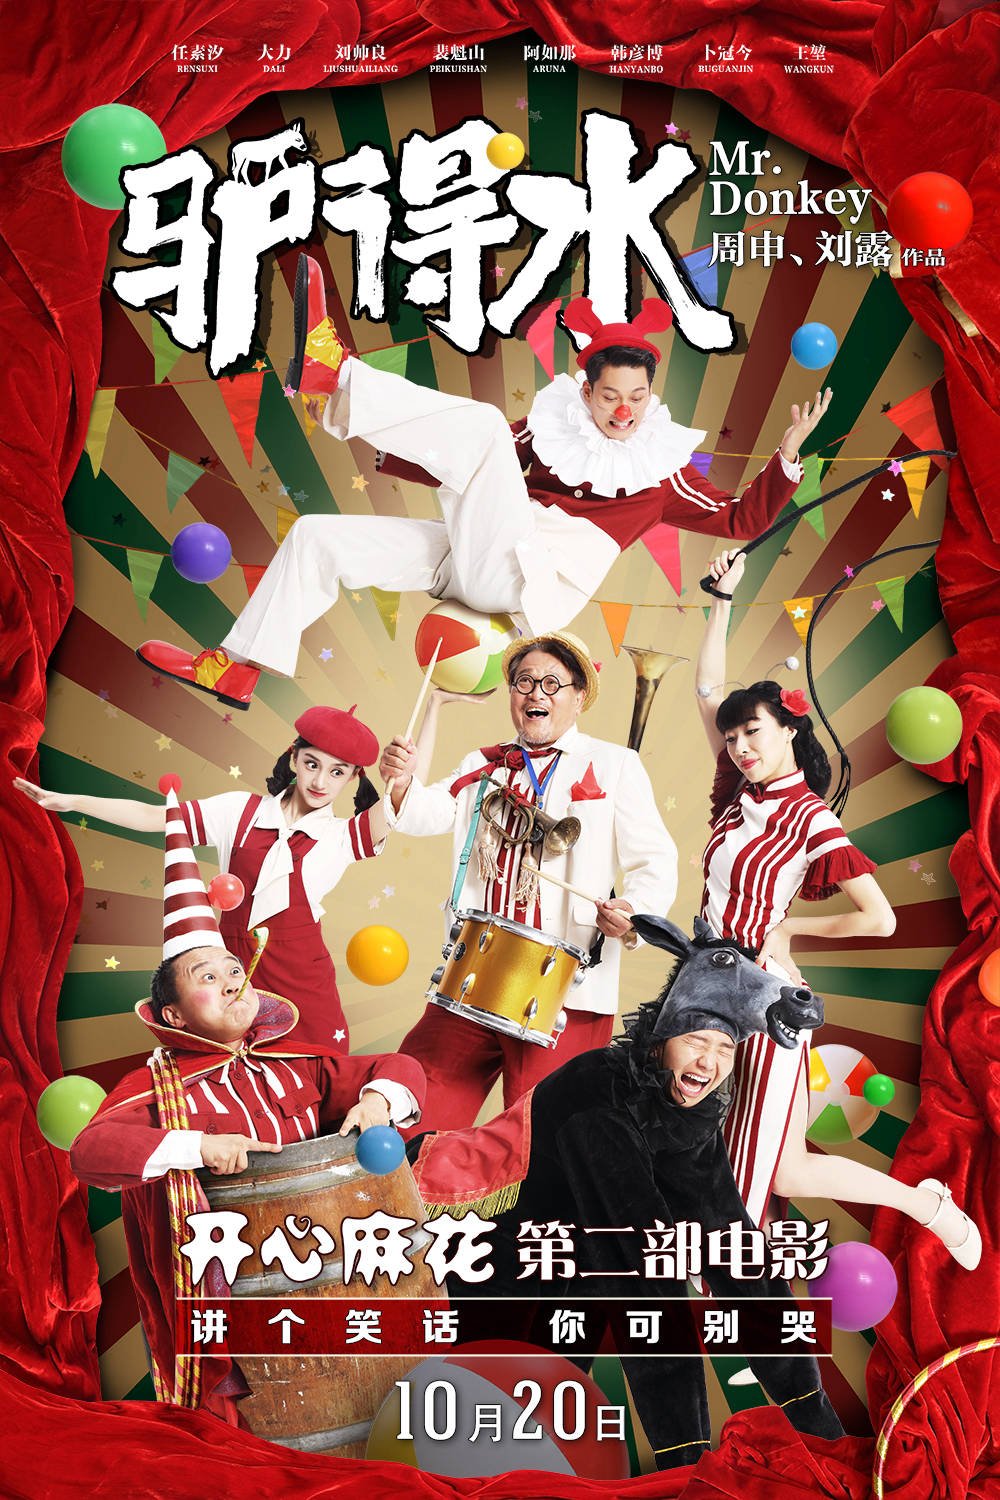 L'affiche originale du film Mr. Donkey en mandarin